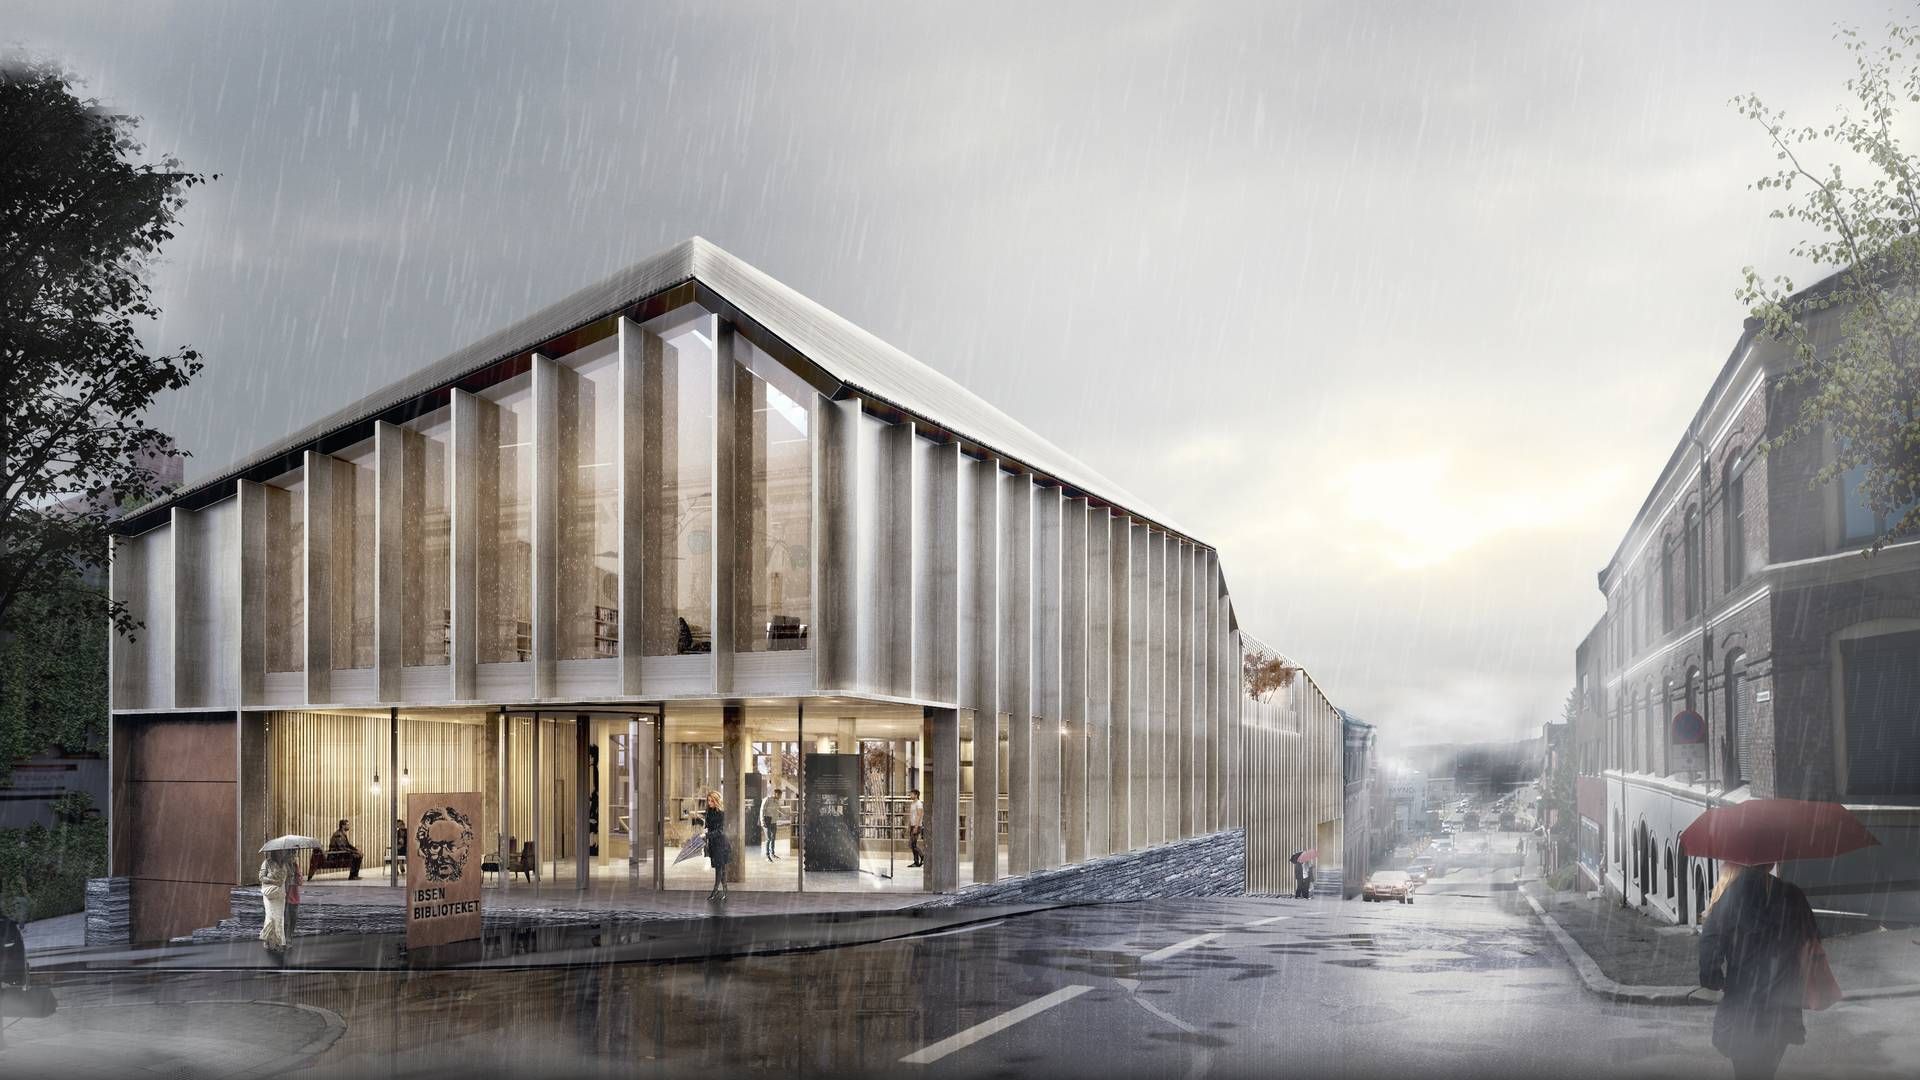 Det nye Ibsen Bibliotek får placering i Skien i Norge. Den præcise placering er endnu ikke fastlagt. | Foto: PR / Schmidt Hammer Lassen